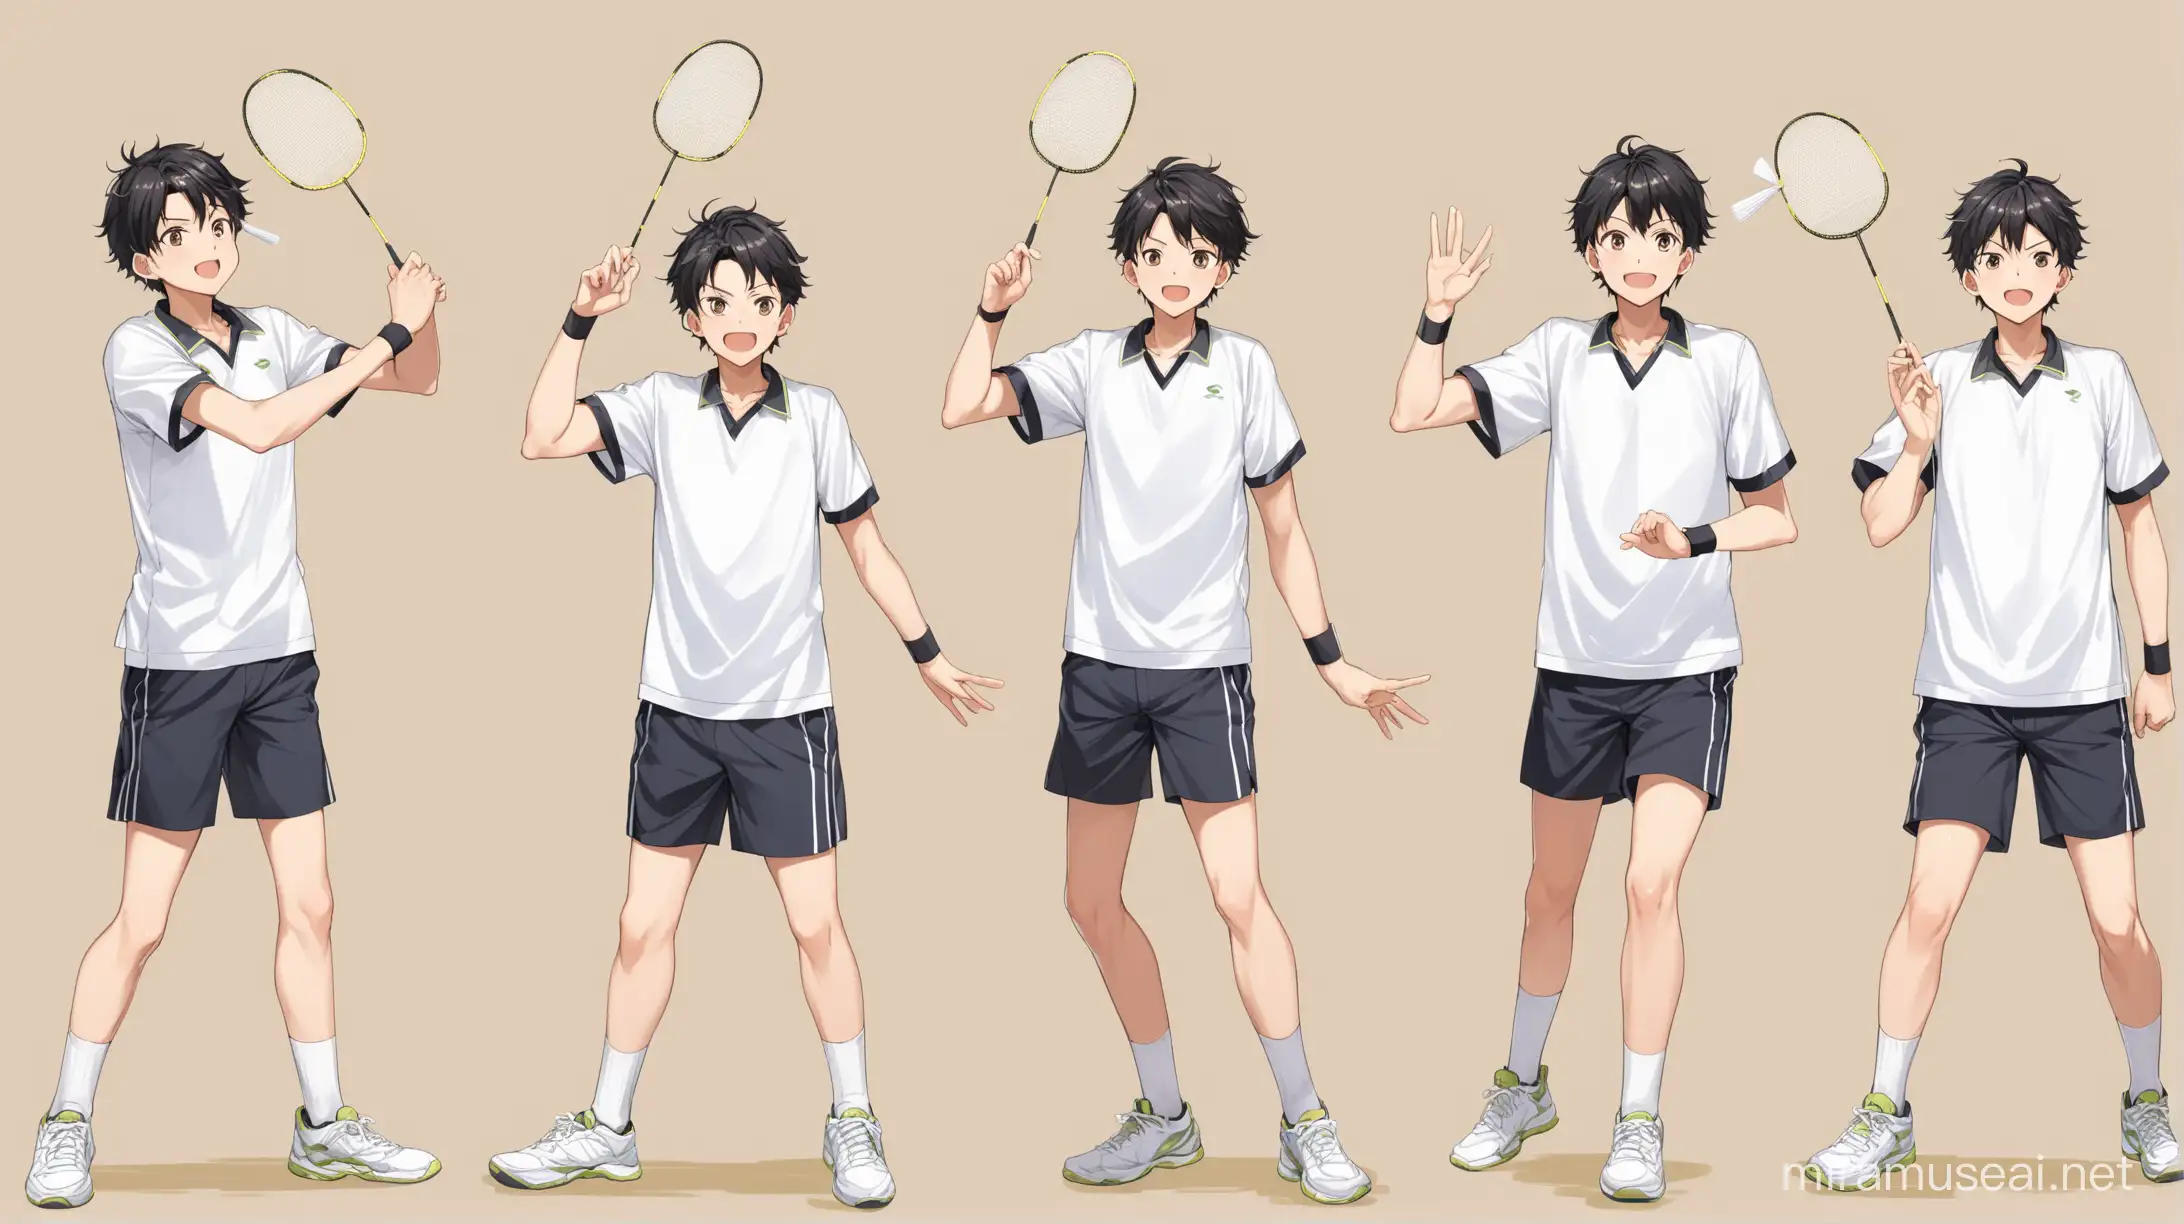 boy serving badminton pose, 3 pose